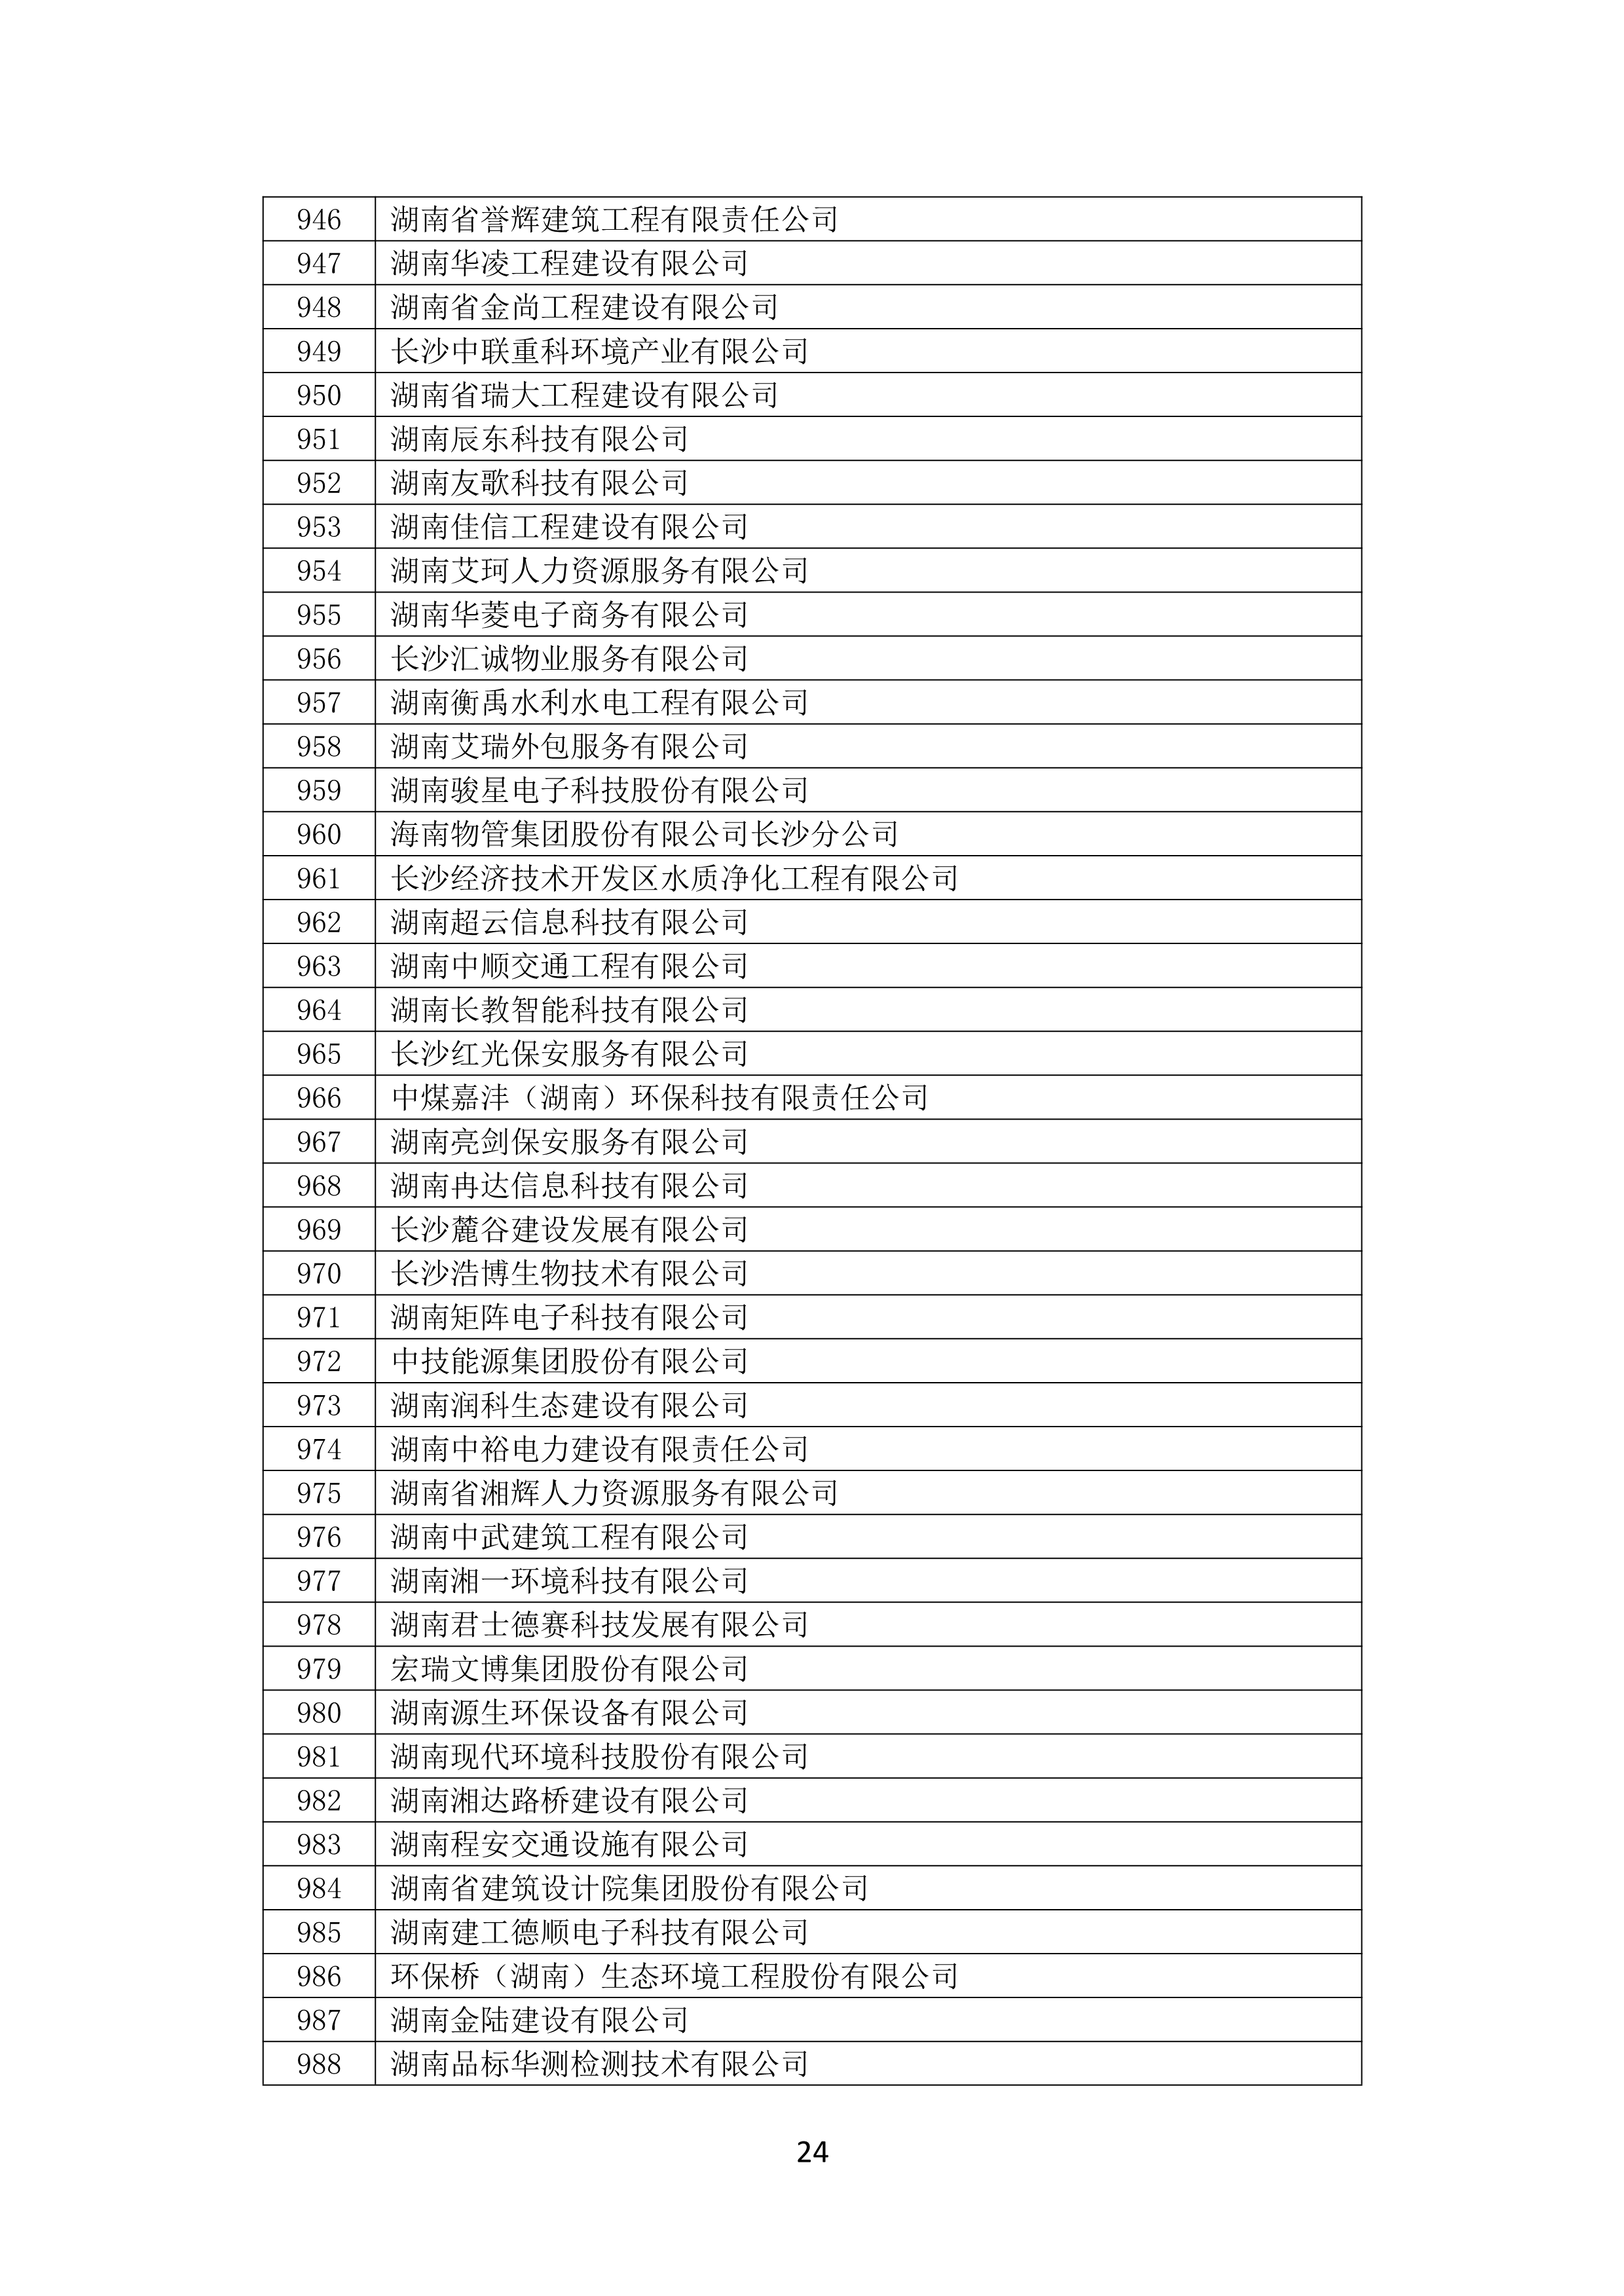 2021 年(nián)度湖南省守合同重信用企業名單_25.png